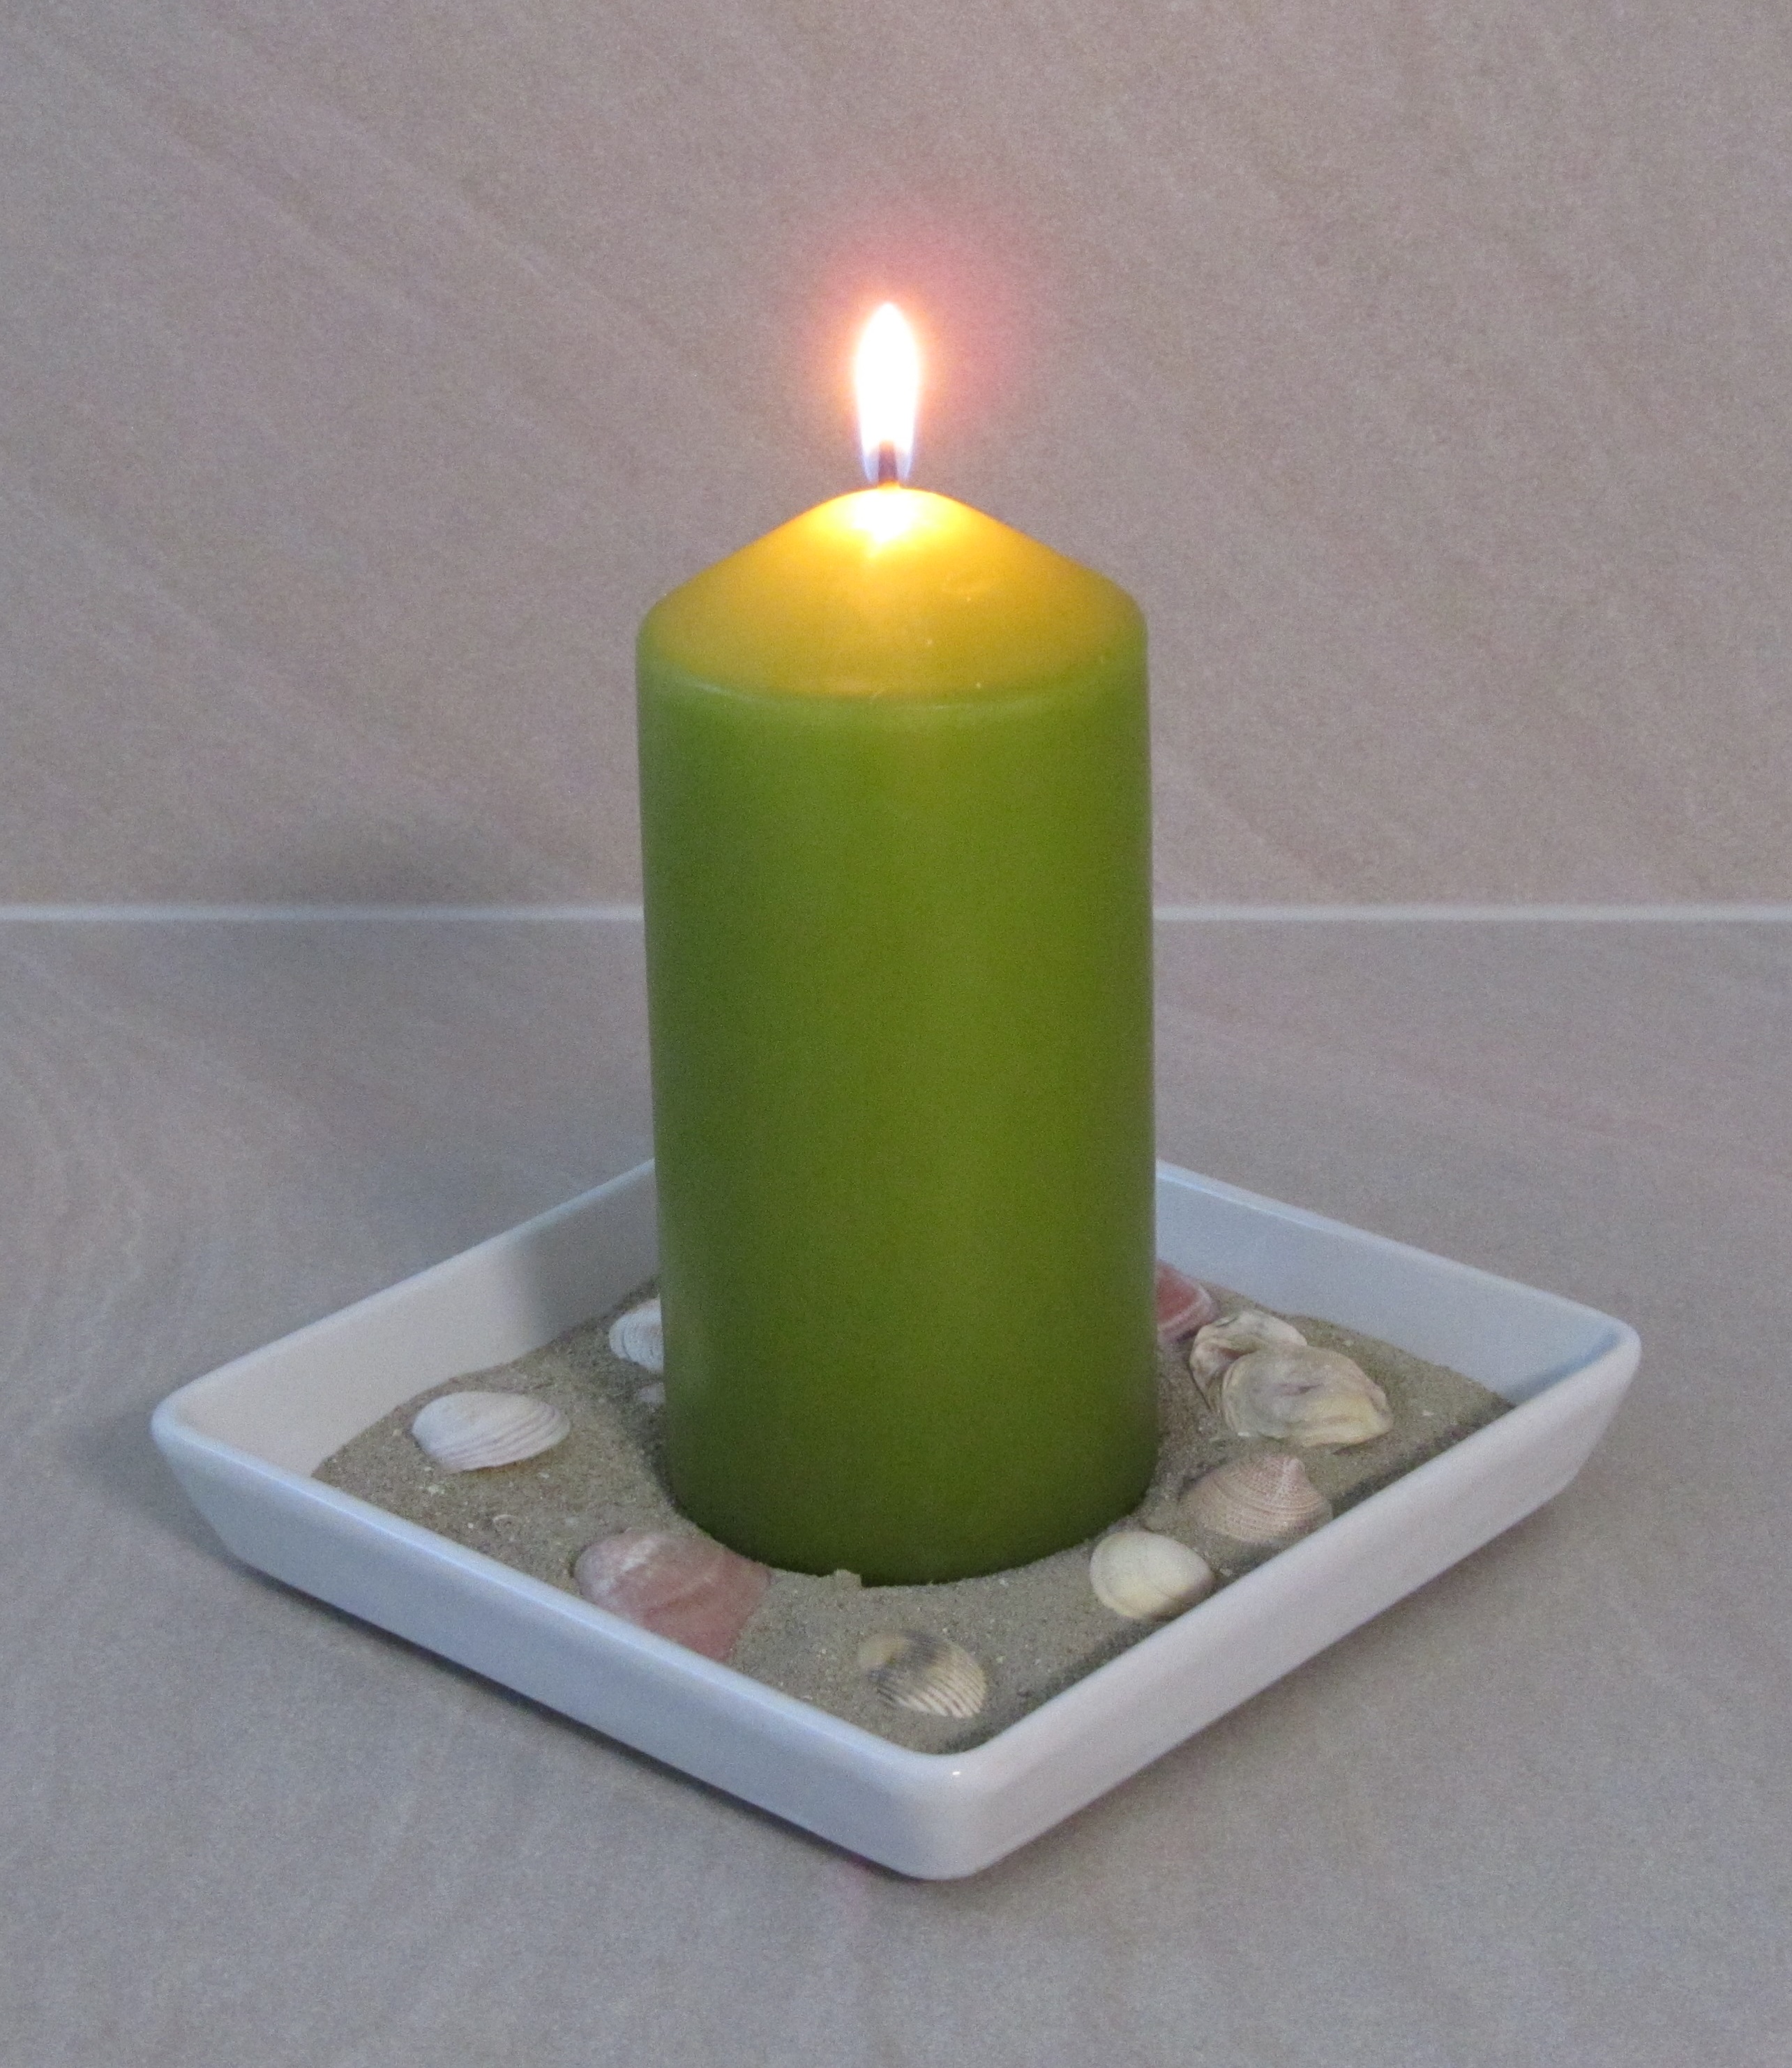 Bild der Kerze im Massageraum